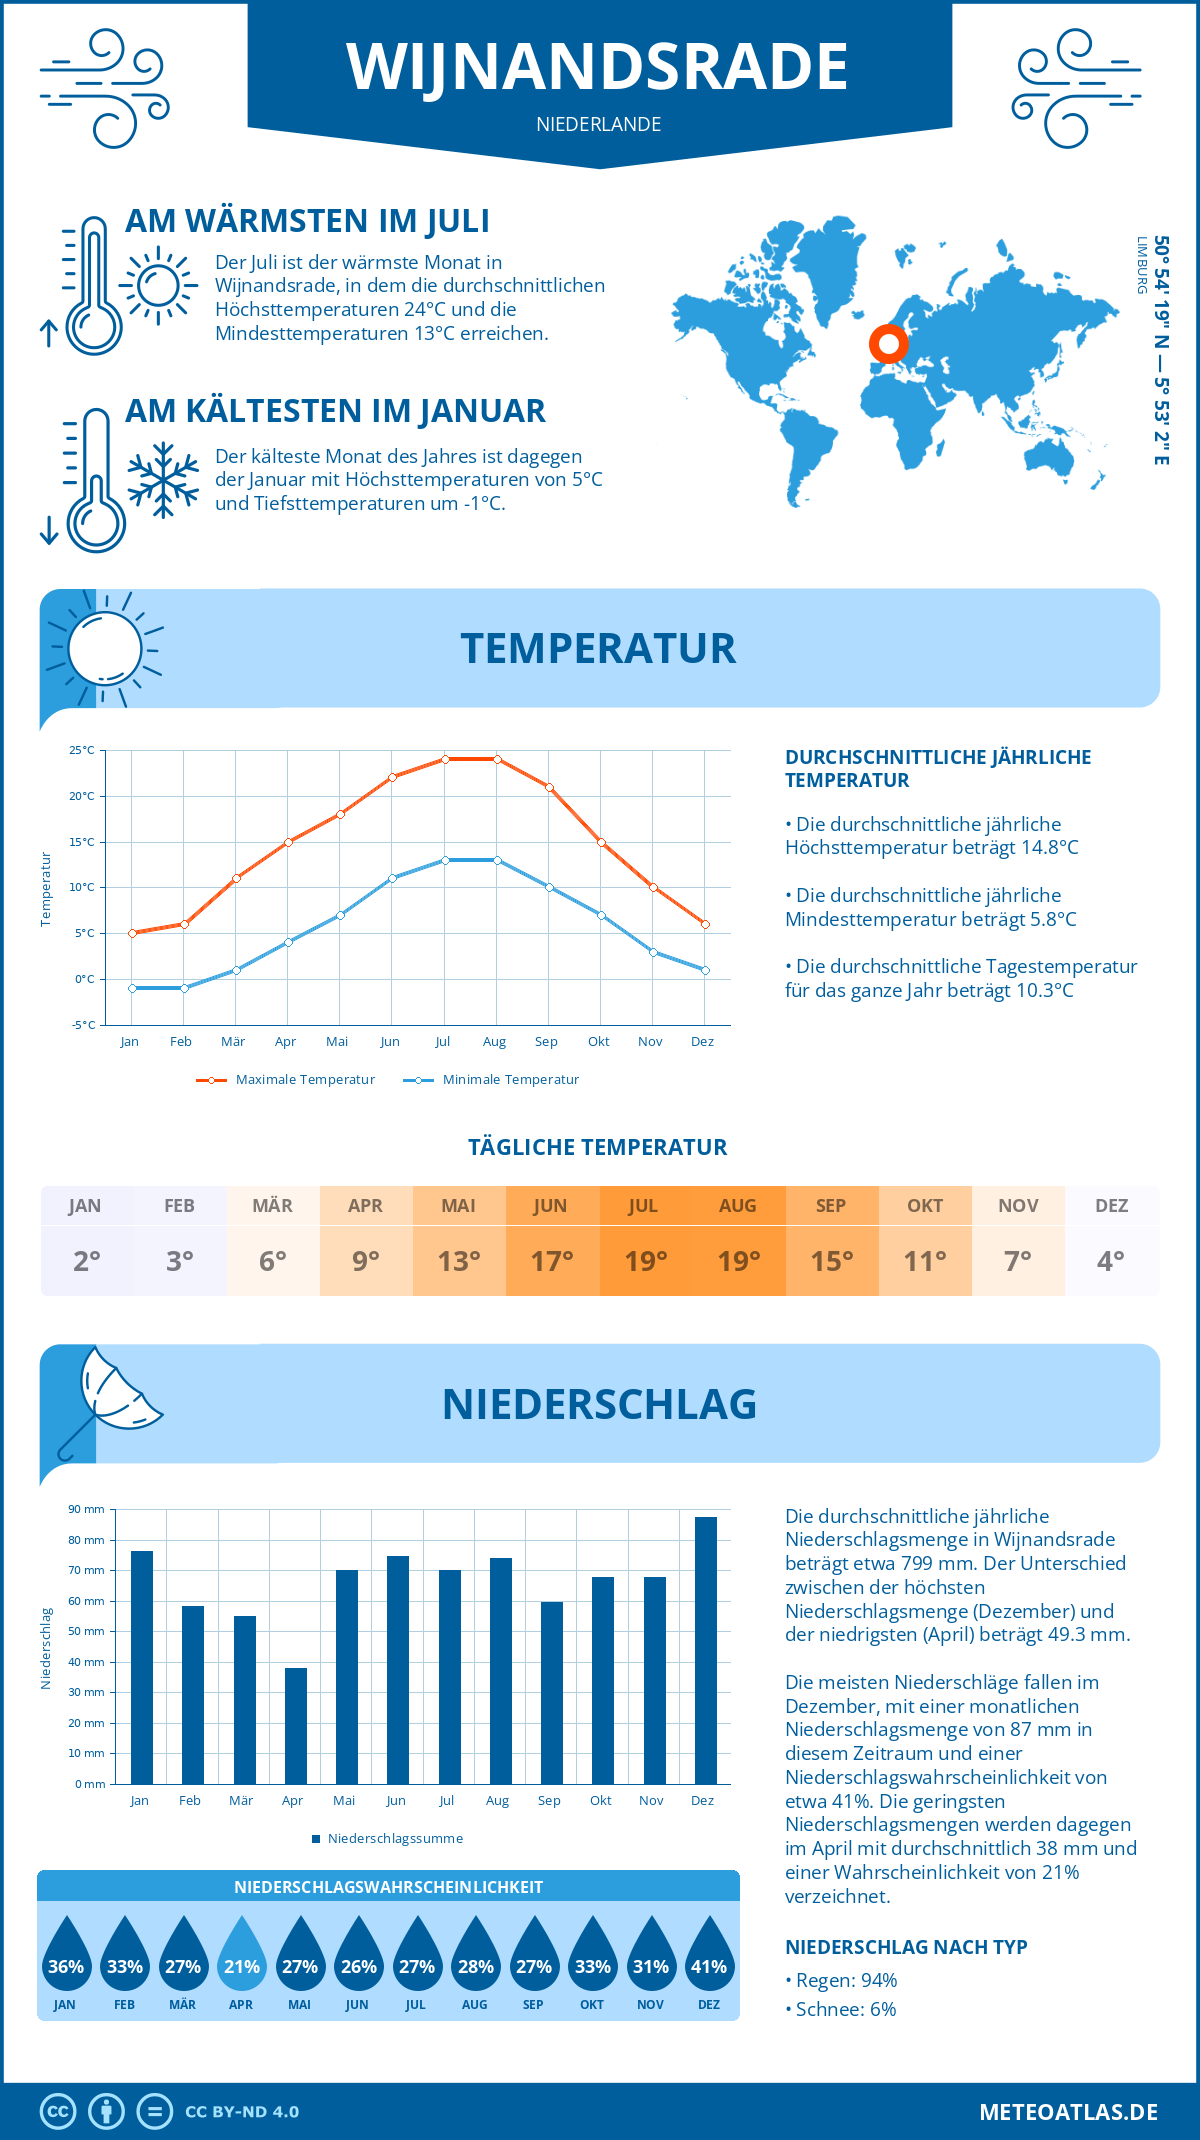 Wetter Wijnandsrade (Niederlande) - Temperatur und Niederschlag